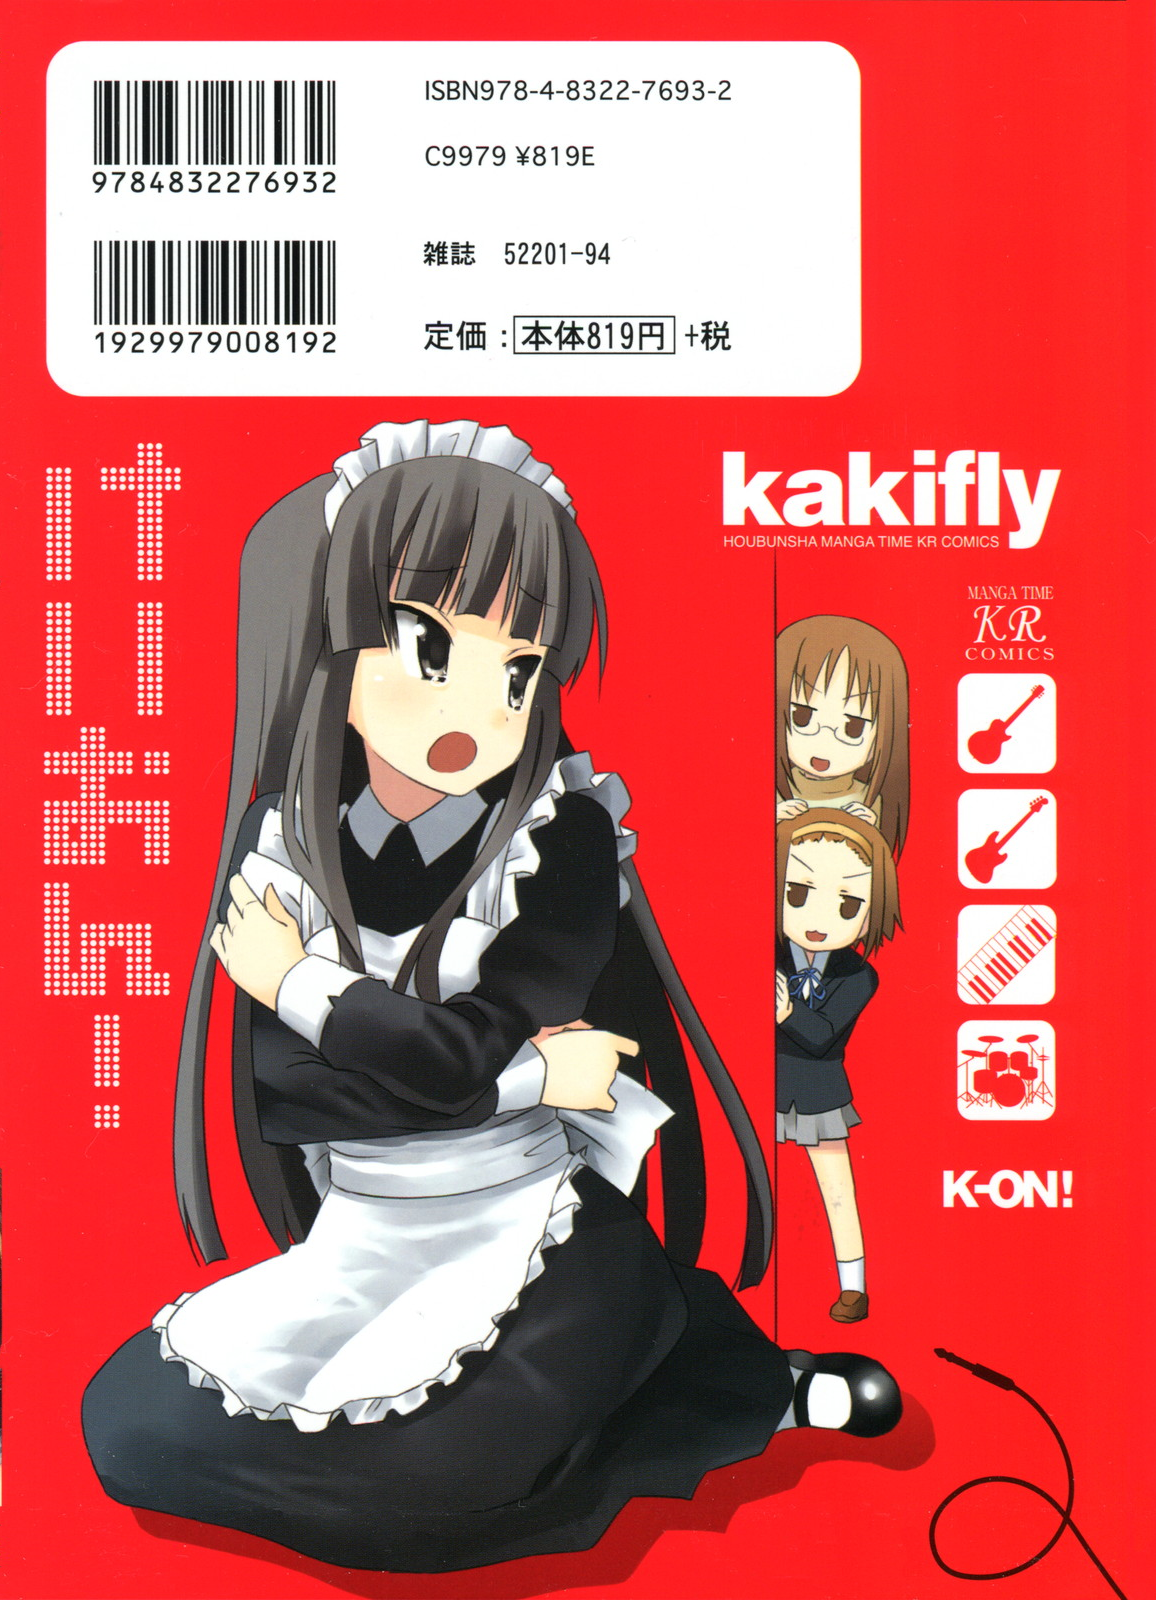 k on - How long ago were the flashbacks? - Anime & Manga Stack